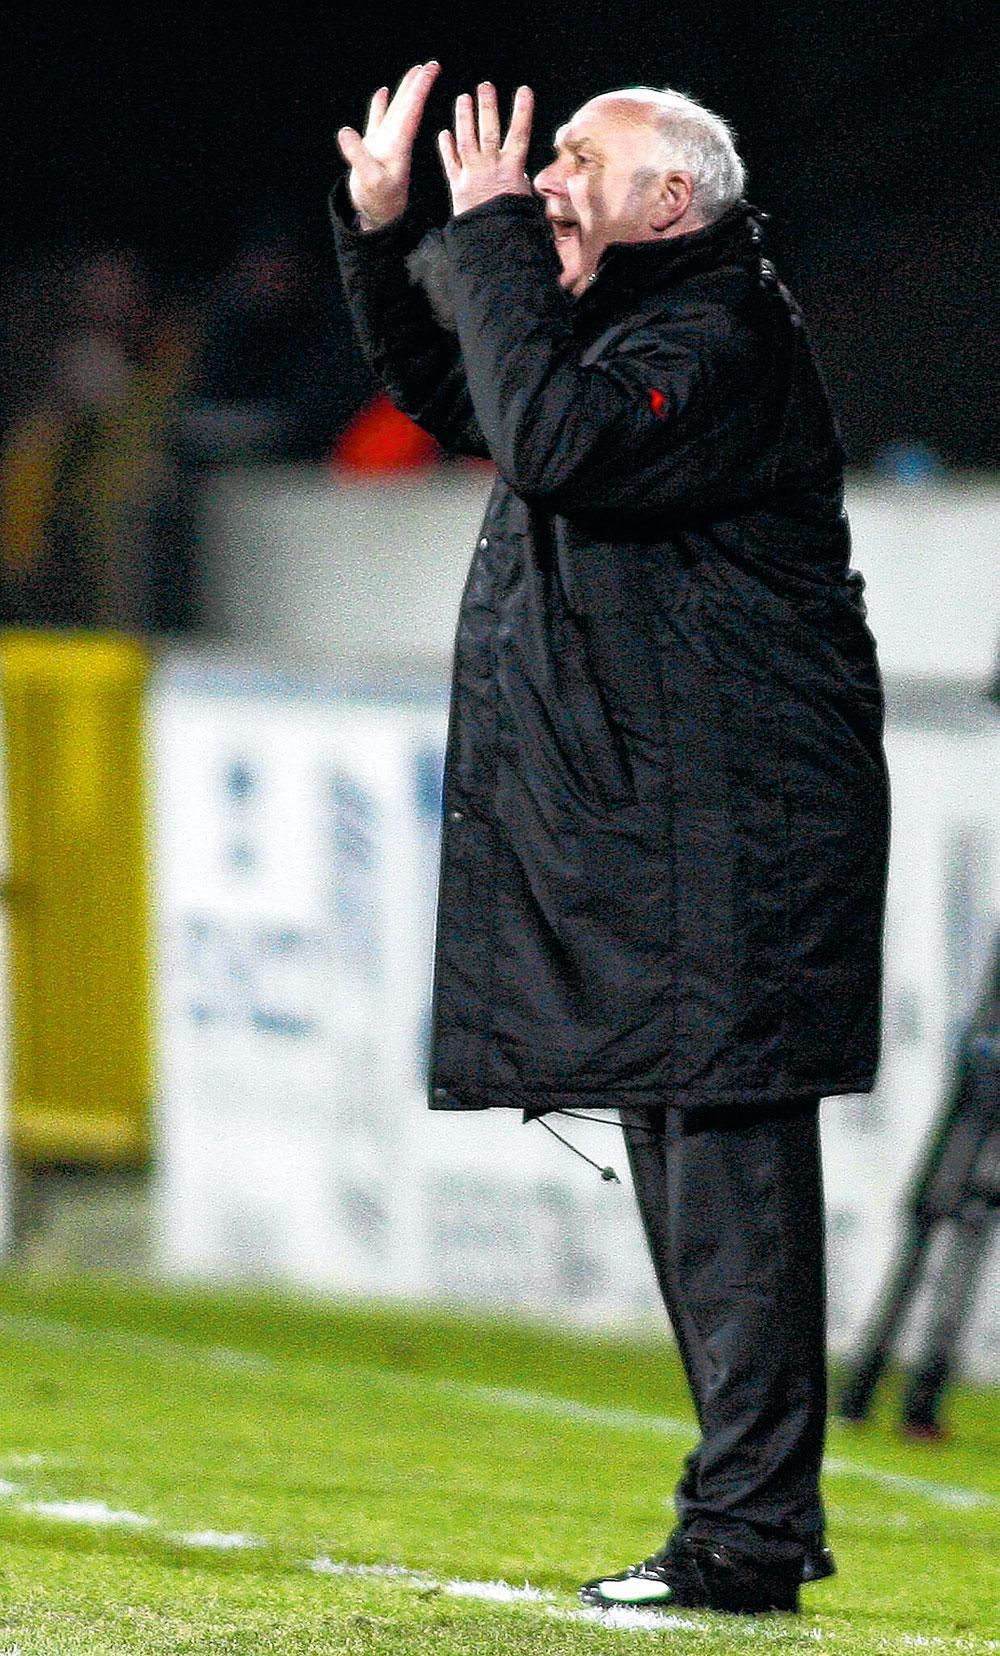 Aimé Anthuenis was trainer van Lokeren toen zijn ploeg op 11 februari 2006 een erg vreemde wedstrijd speelde tegen Lierse. 'Ik wil daar liever niet meer op terugkomen', zegt hij nu.